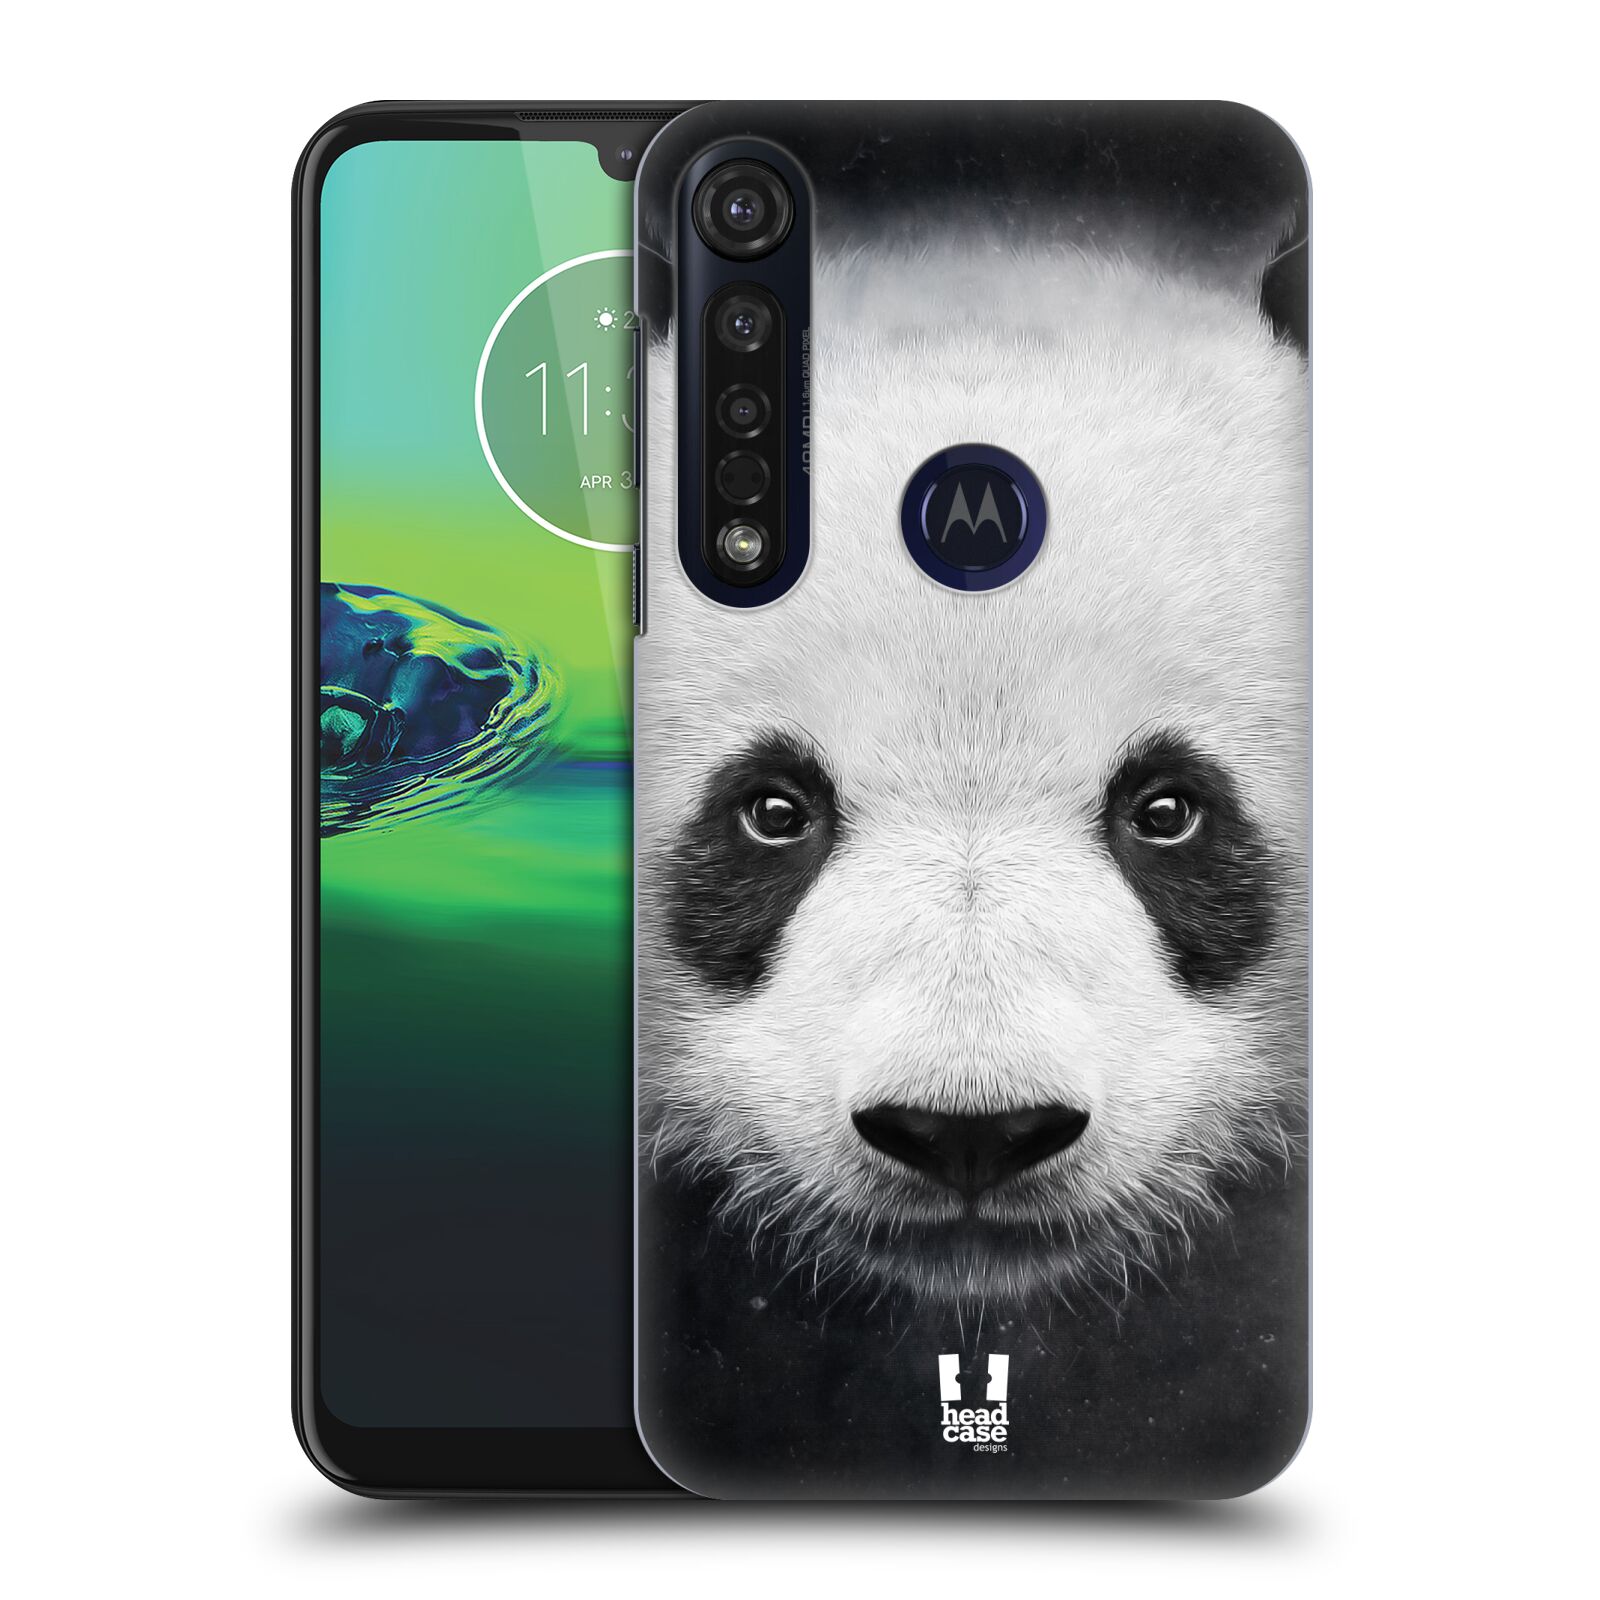 Pouzdro na mobil Motorola Moto G8 PLUS - HEAD CASE - vzor Zvířecí tváře medvěd panda